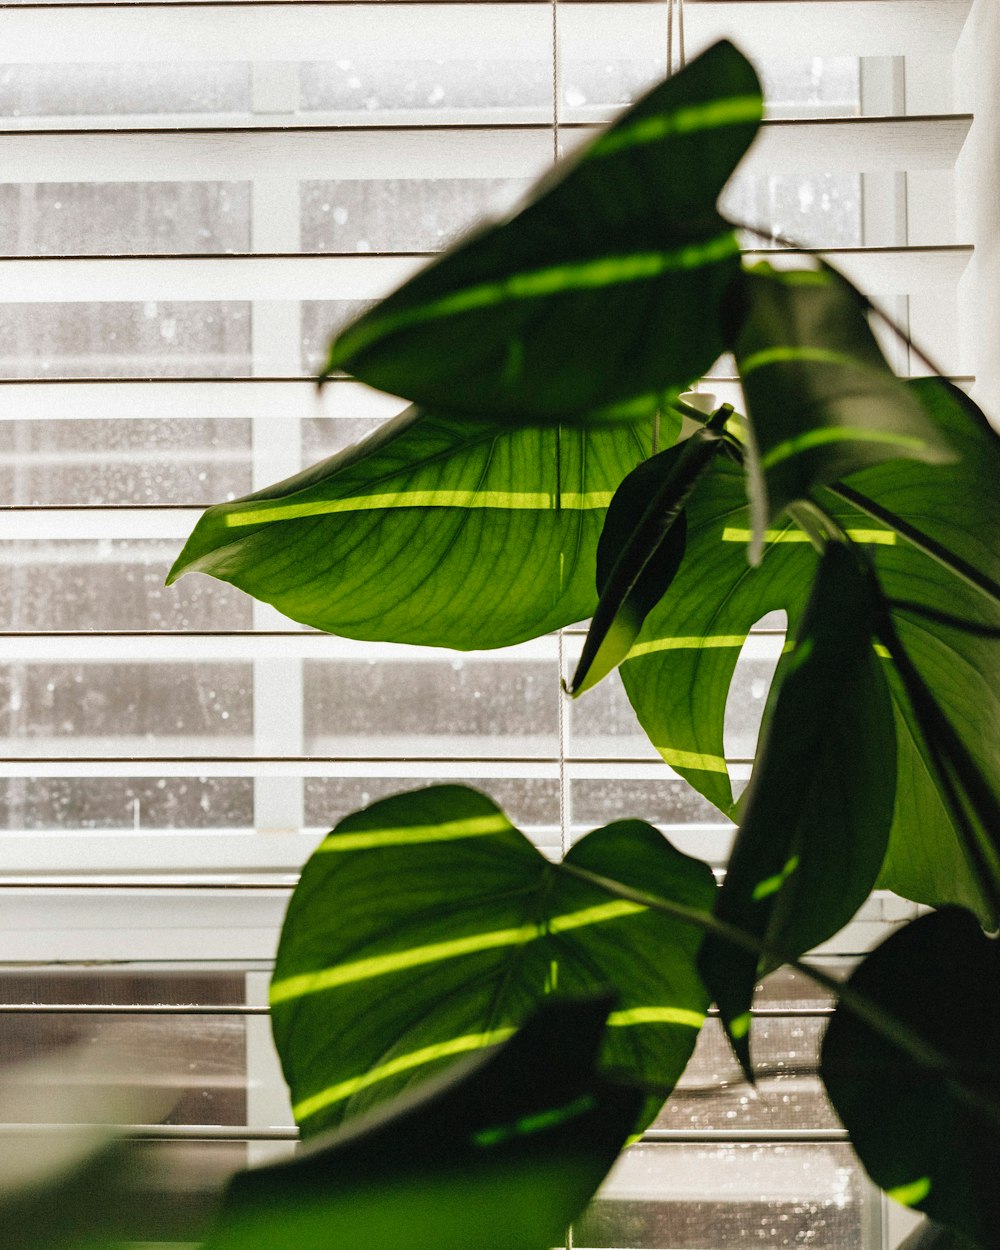 green leaves beside white window blinds